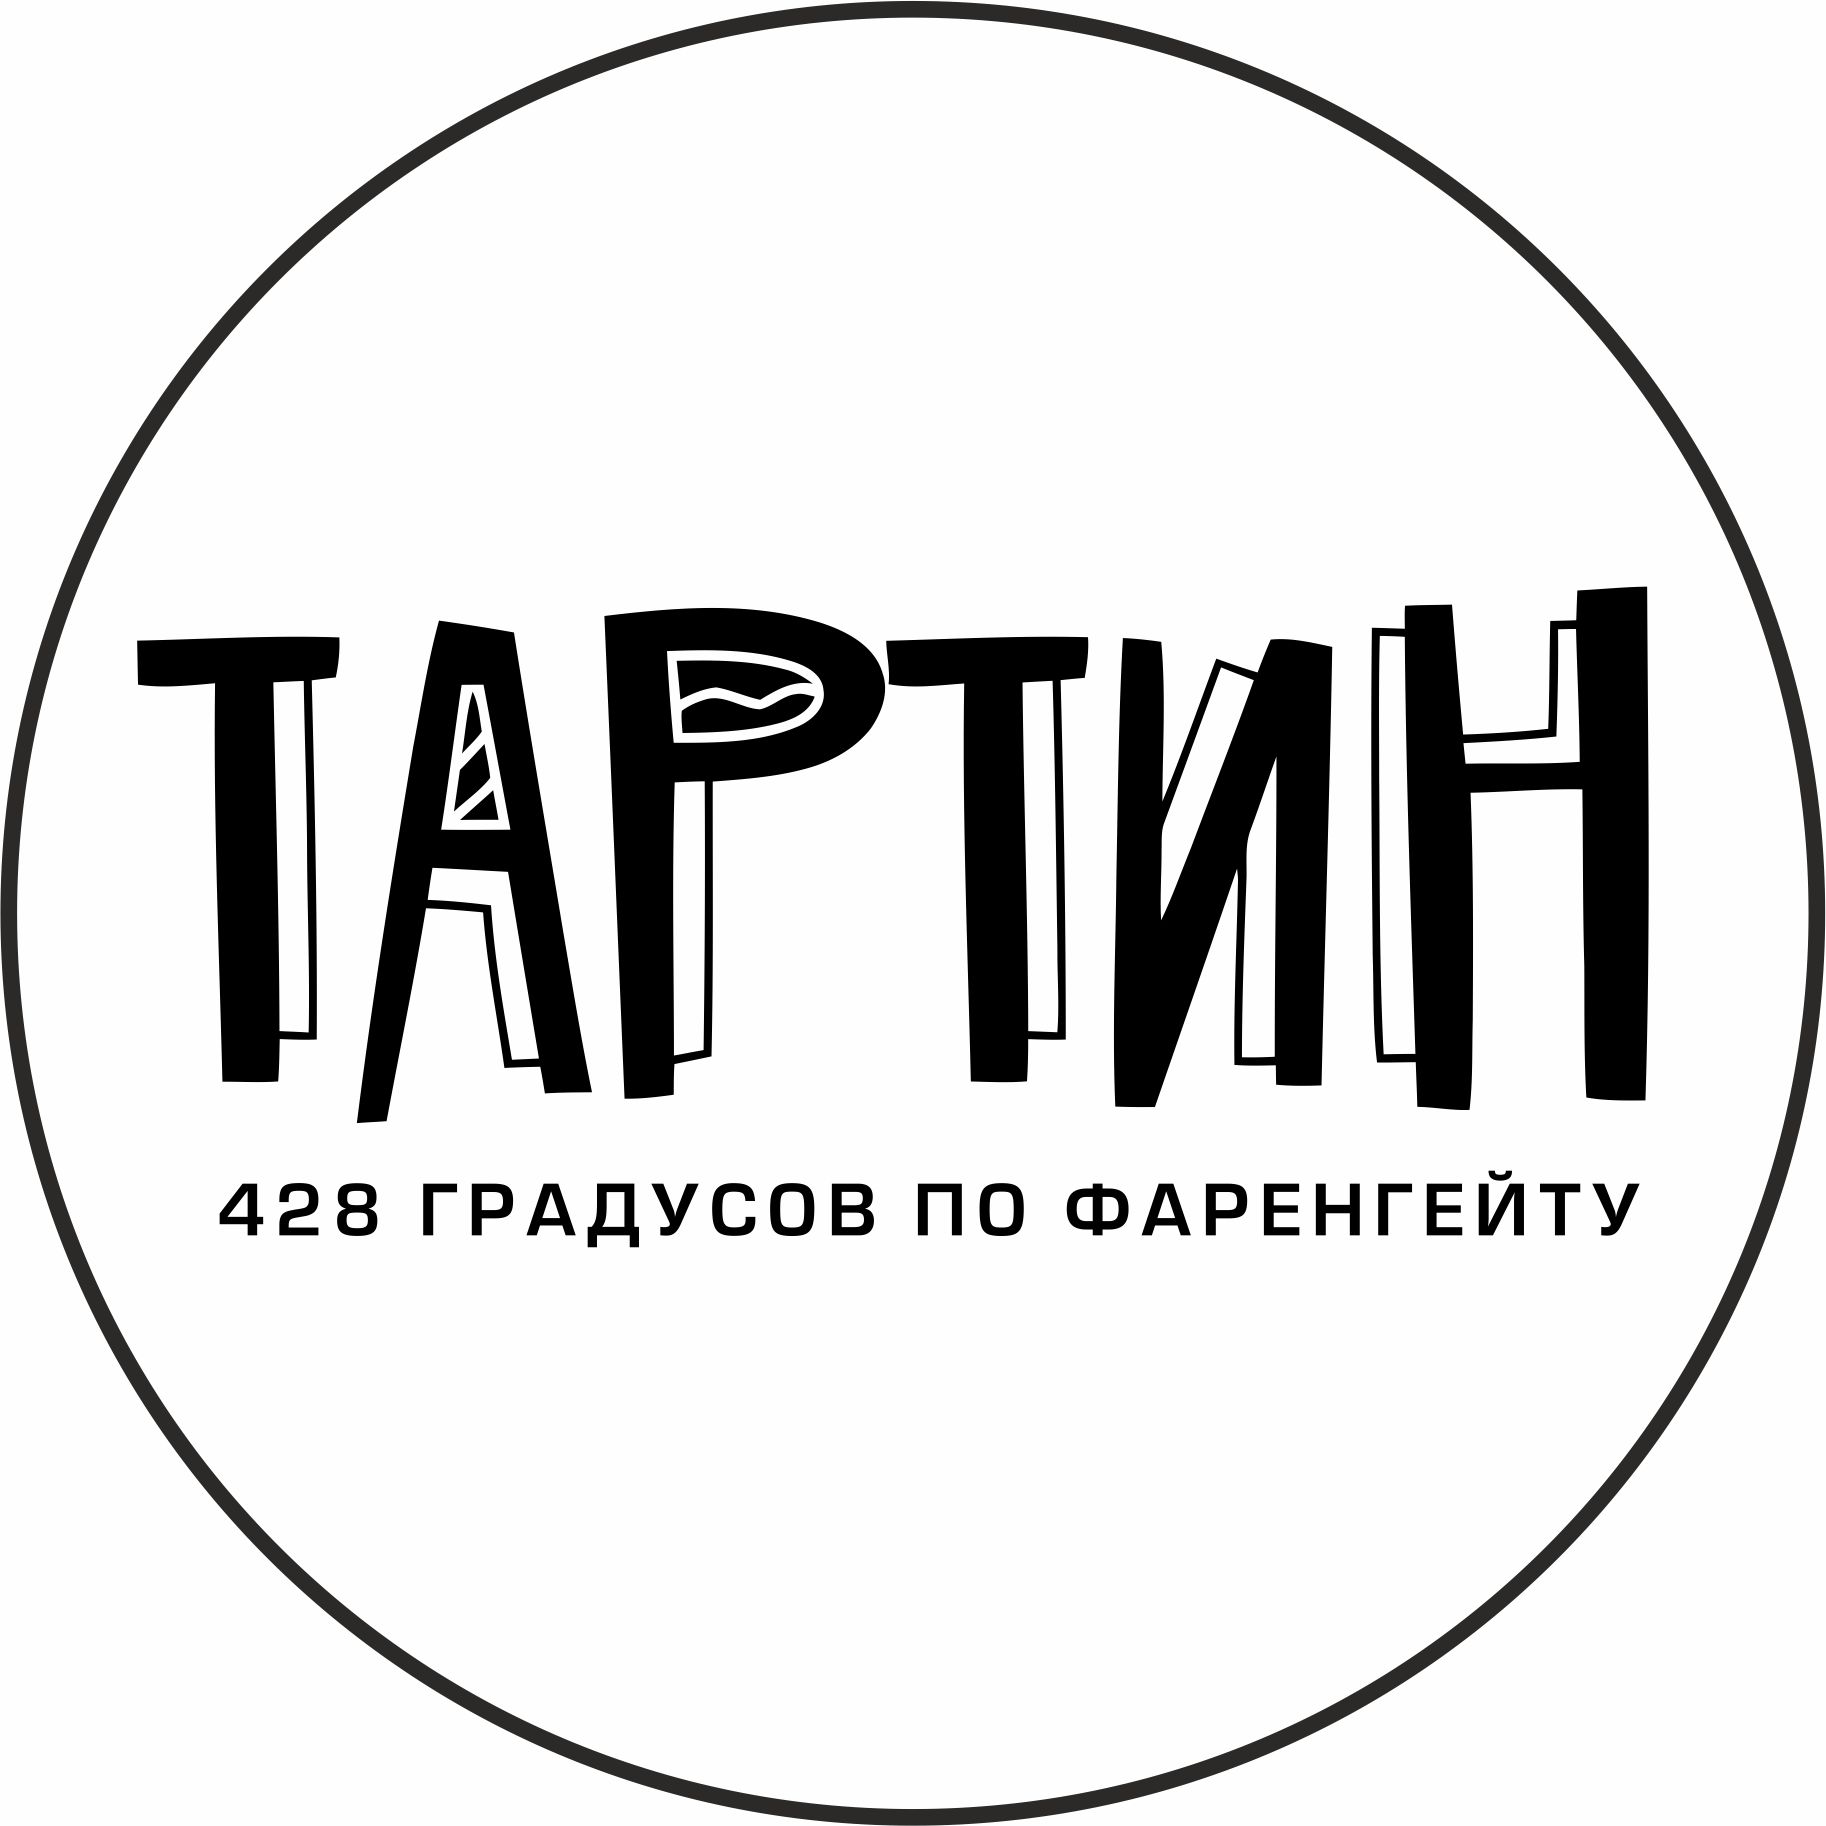 Логотип Кафе Тартин 428 F